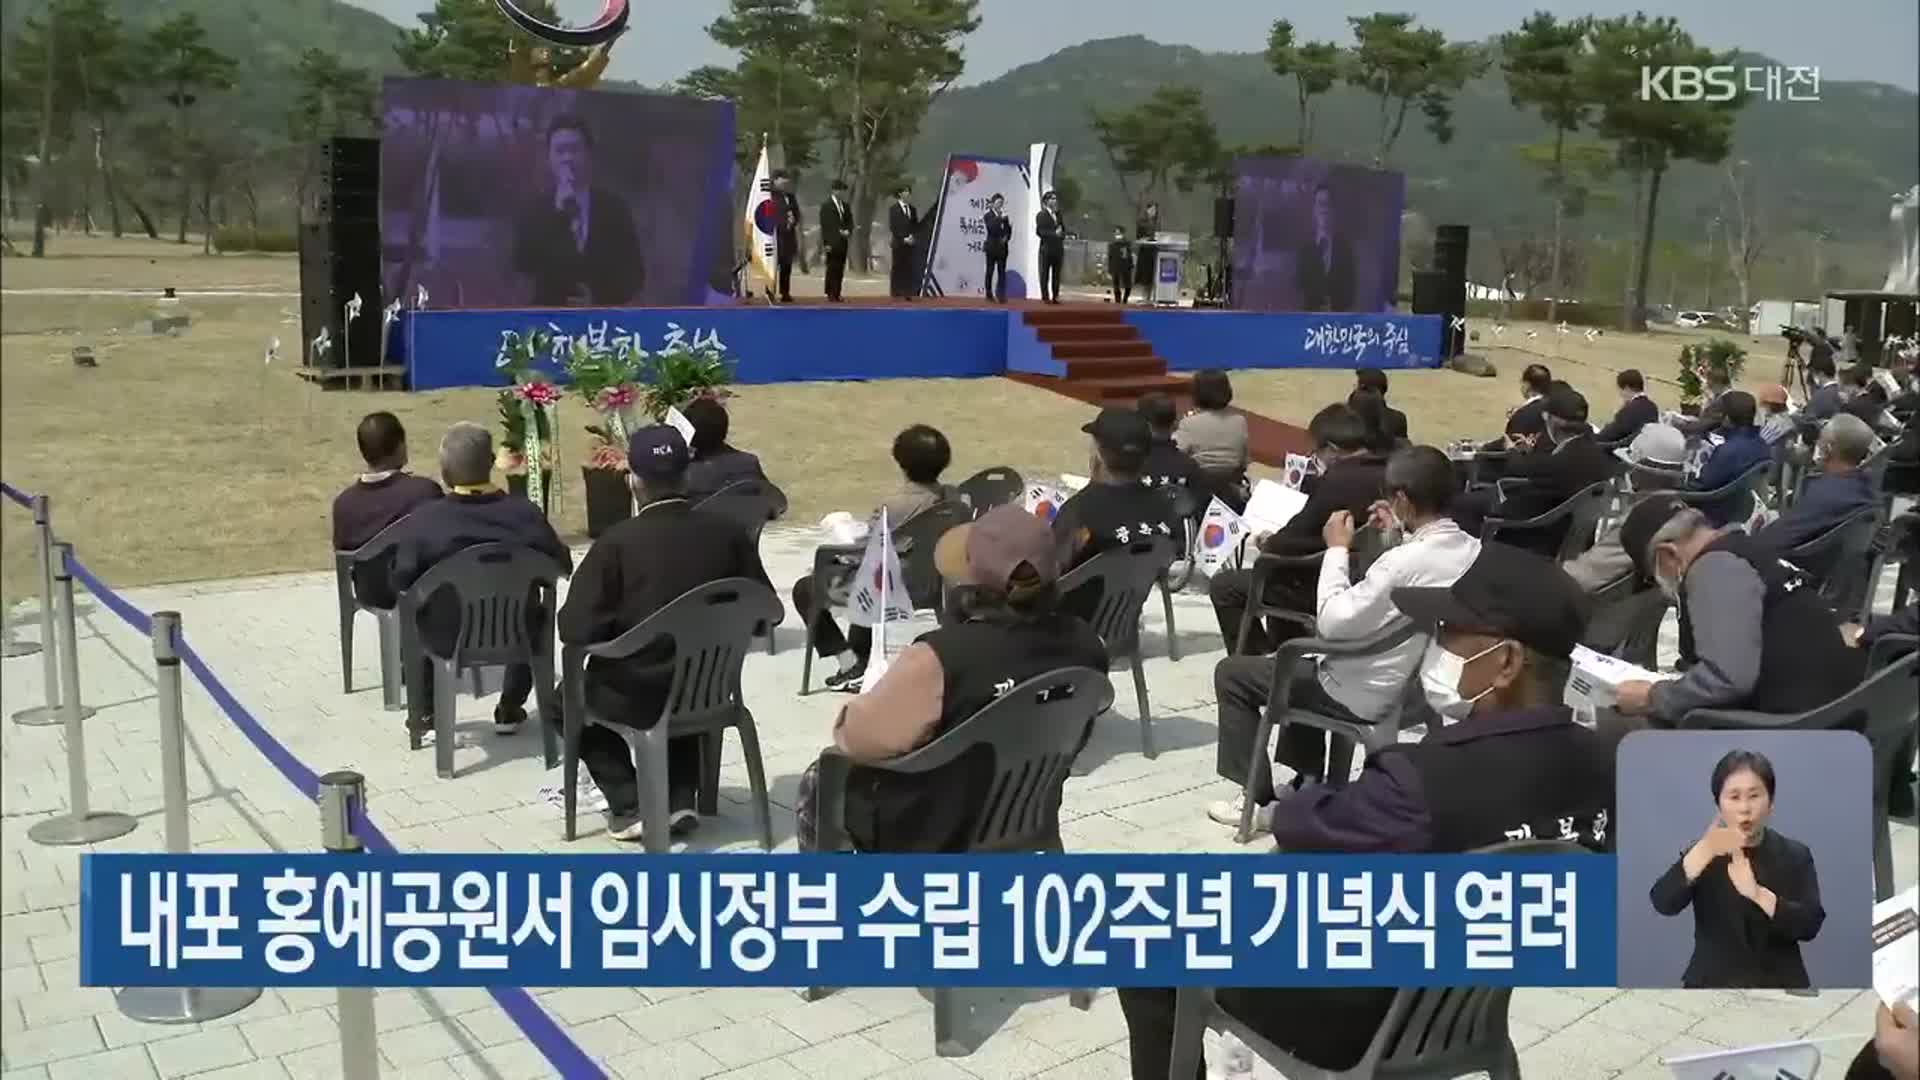 내포 홍예공원서 임시정부 수립 102주년 기념식 열려